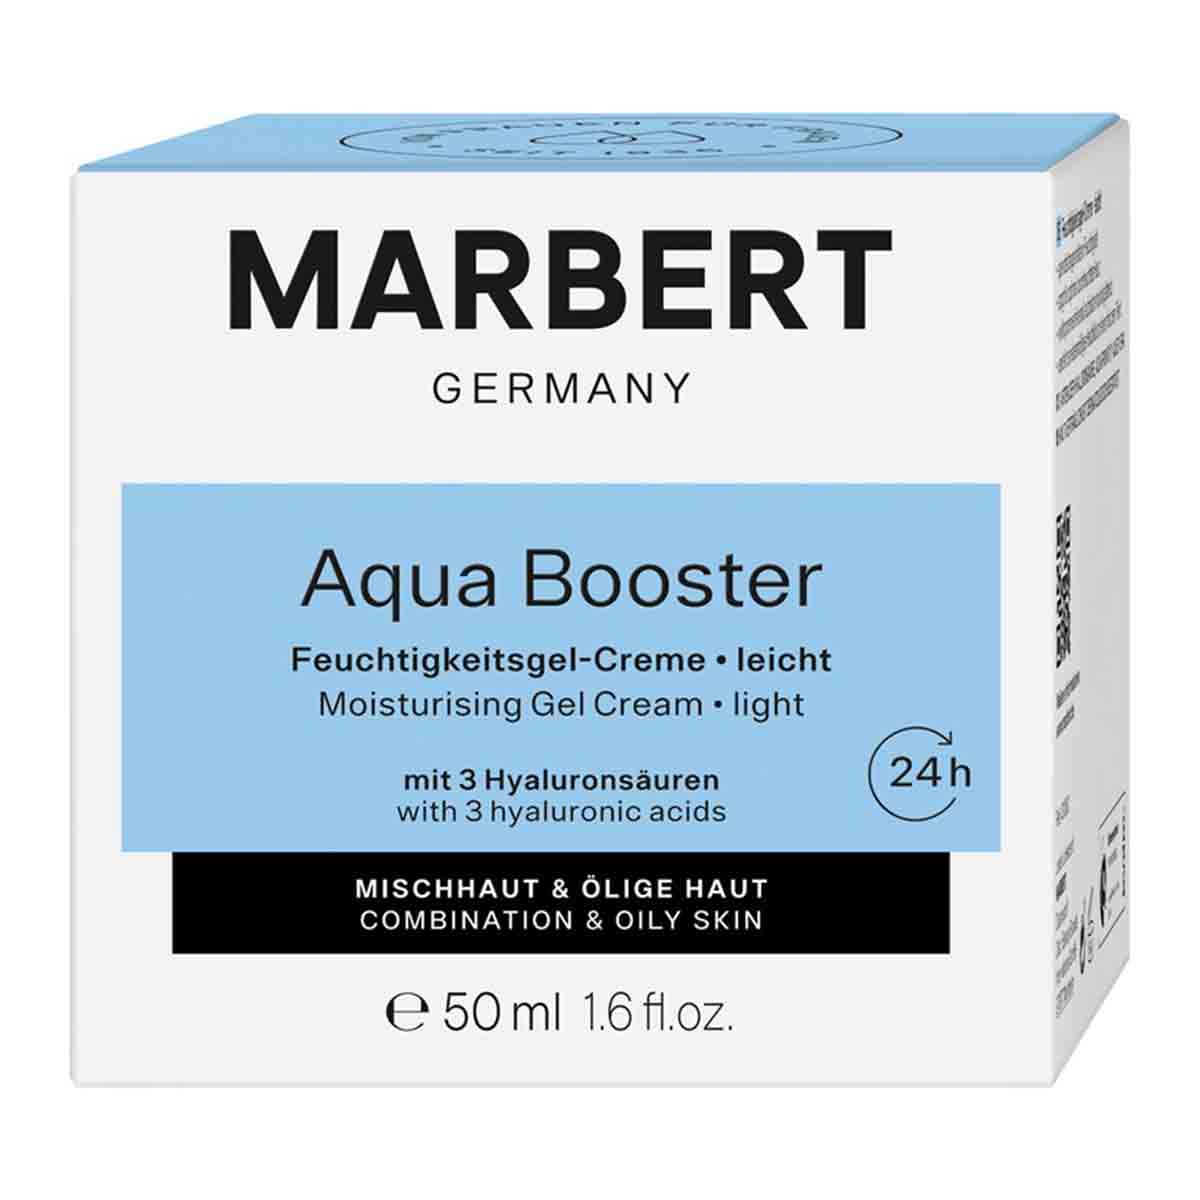  ژل کرم مرطوب کننده ماربرت MARBERT مدل 24h Aqua Booster مناسب پوست چرب و مختلط حجم 50 میل